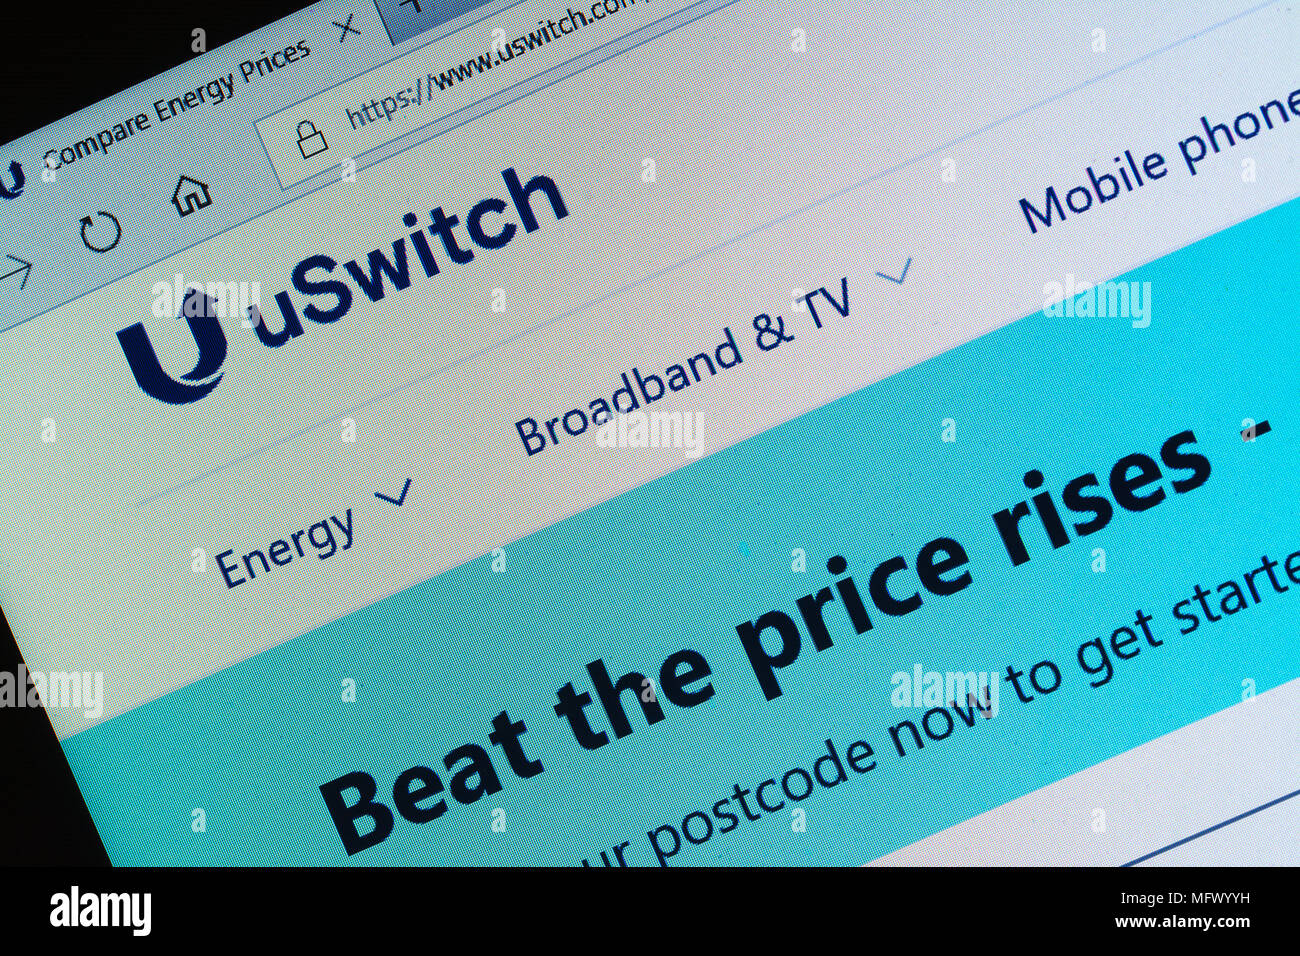 U interruttore sito di confronto per confrontare i prezzi di energia e di altri servizi di pubblica utilità e per le società di commutazione - screenshot Foto Stock